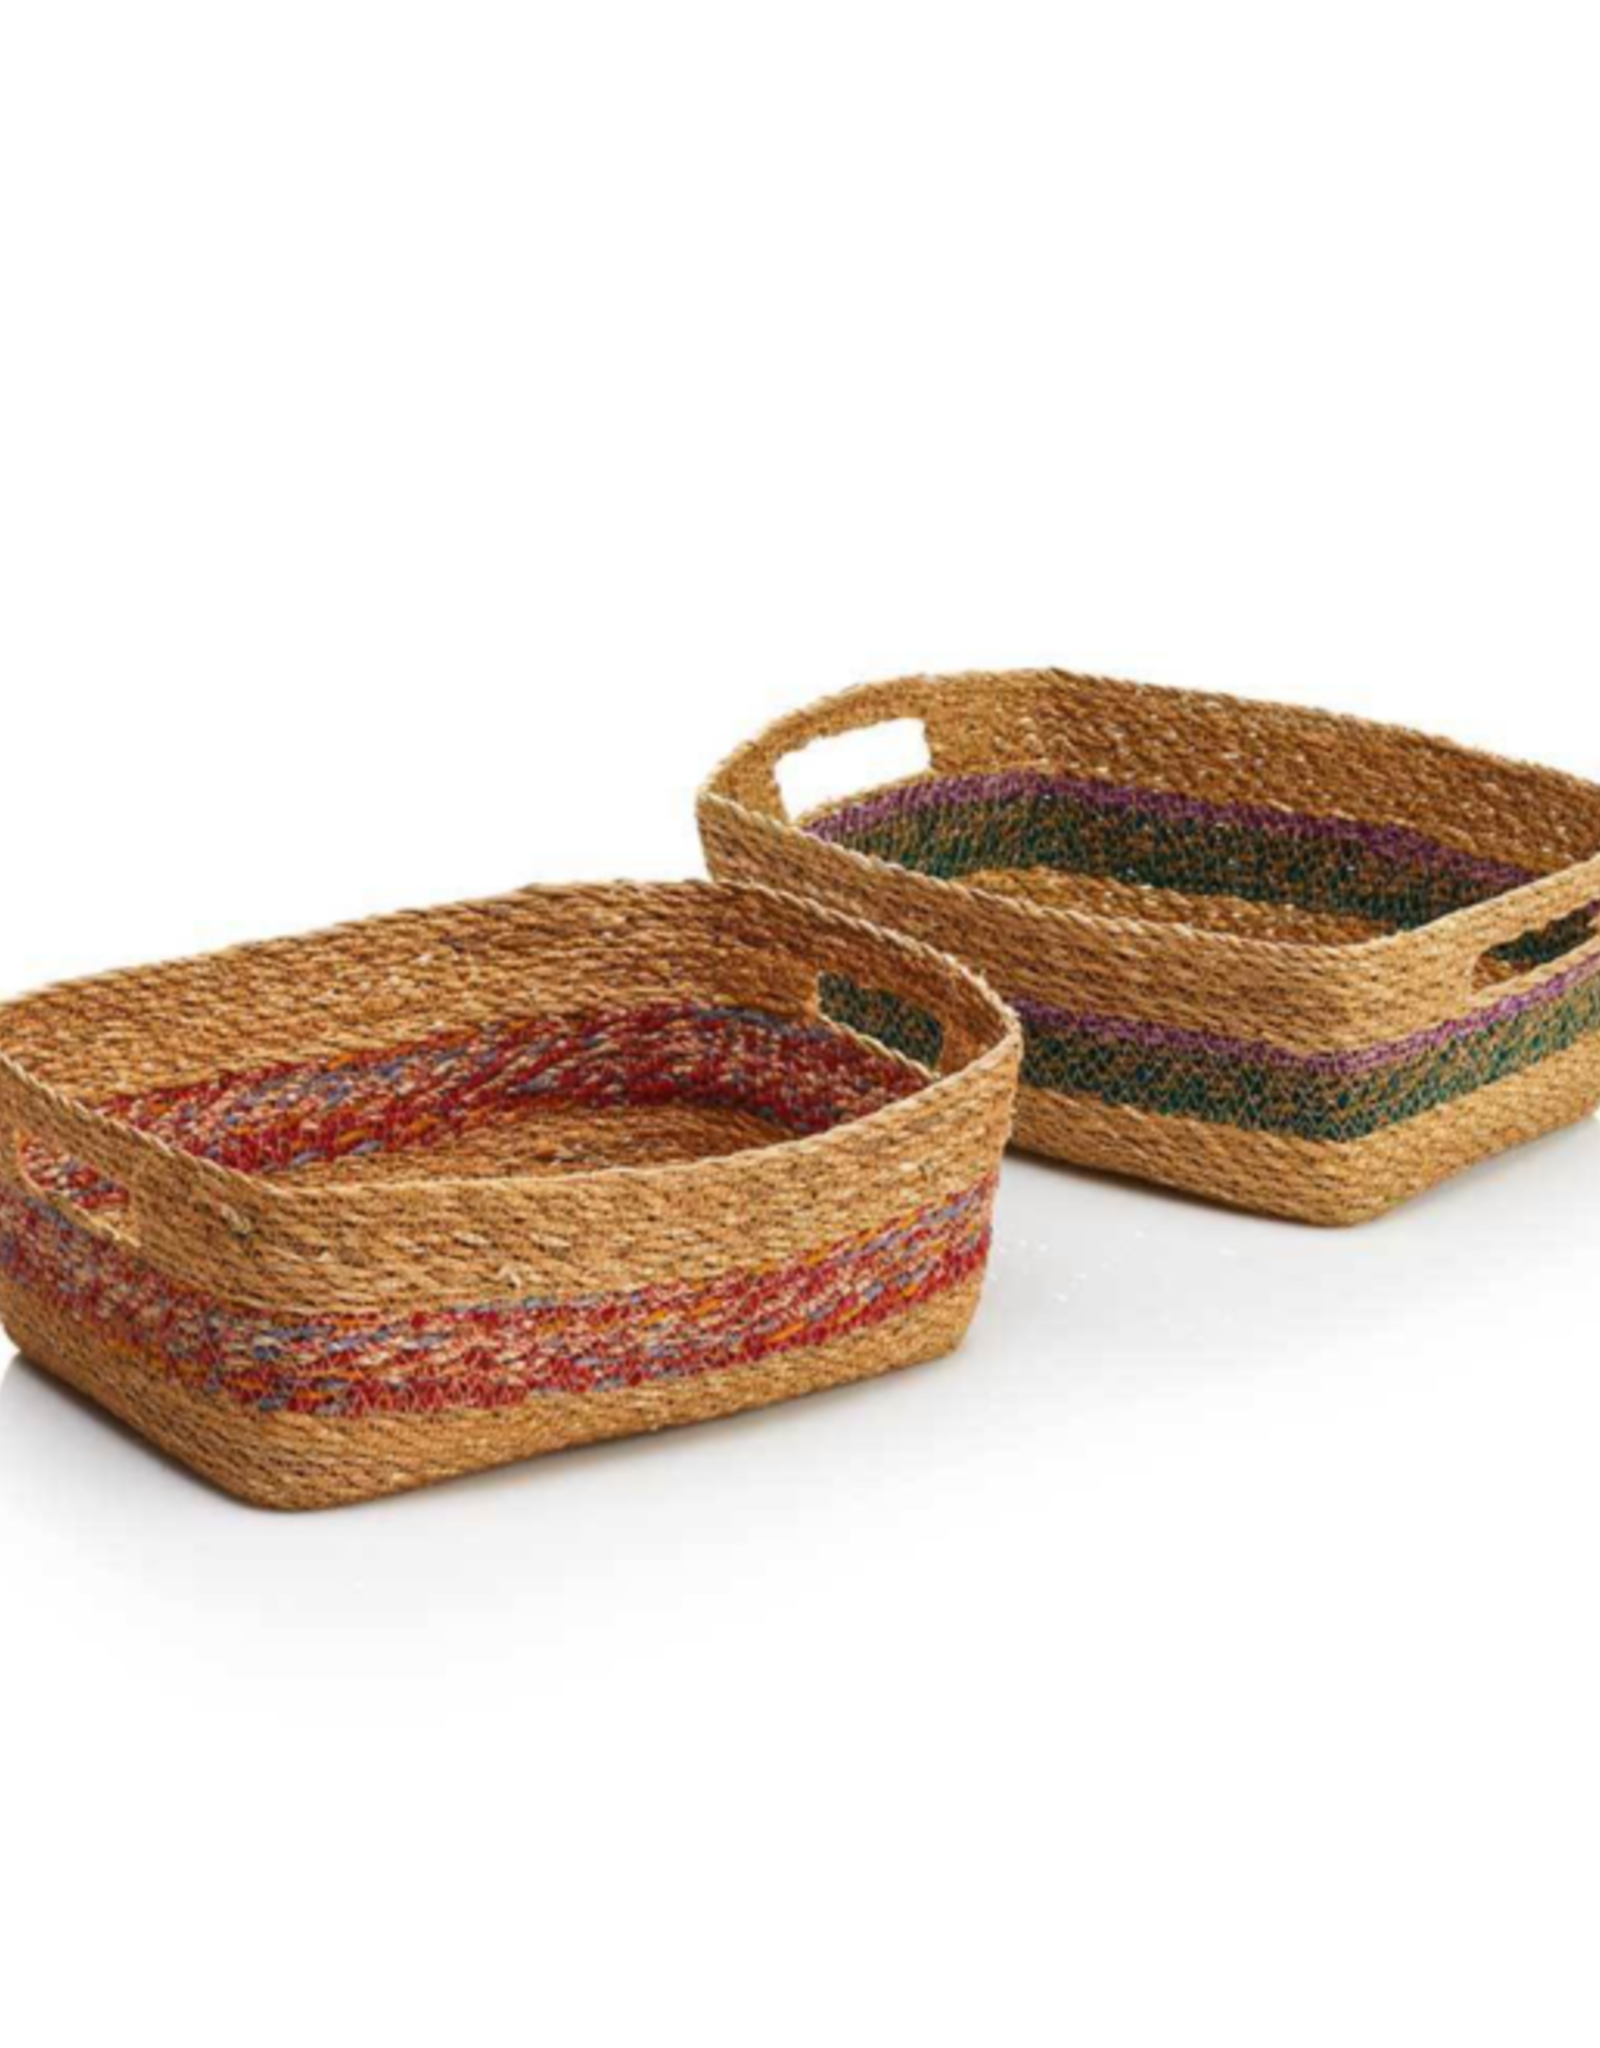 Serrv Chindi Dora Baskets Small